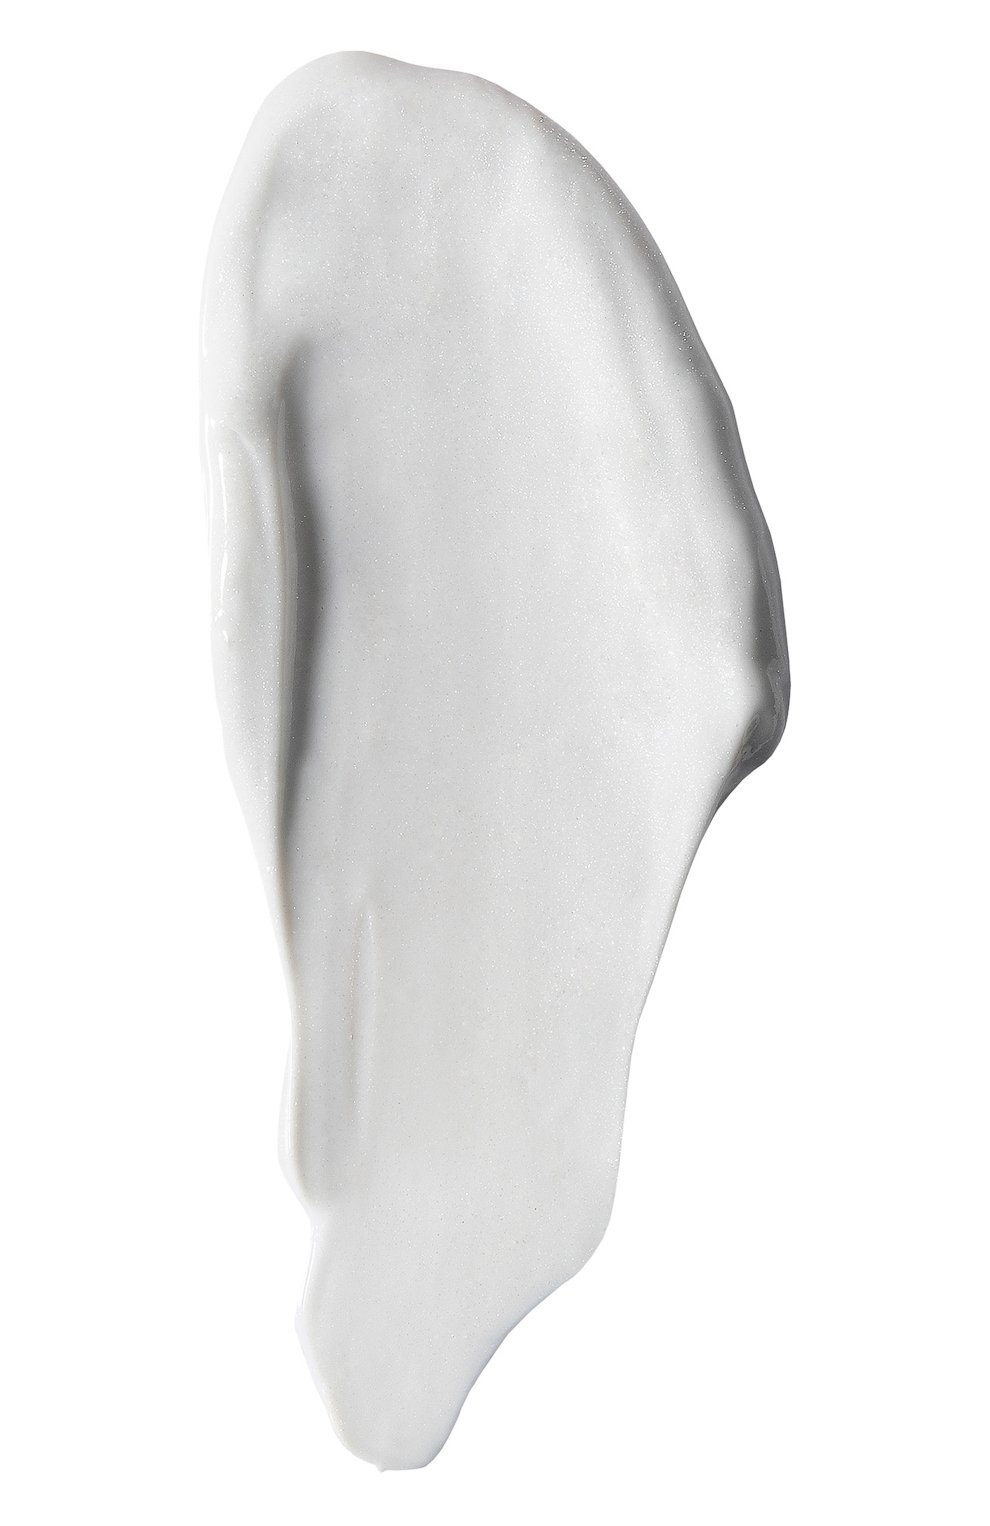 Крем для лица platinum rare haute-rejuvenation cream (50ml) LA PRAIRIE бесцветного цвета, арт. 7611773108553 | Фото 2 (Обьем косметики: 100ml; Тип продукта: Кремы; Назначение: Для лица)